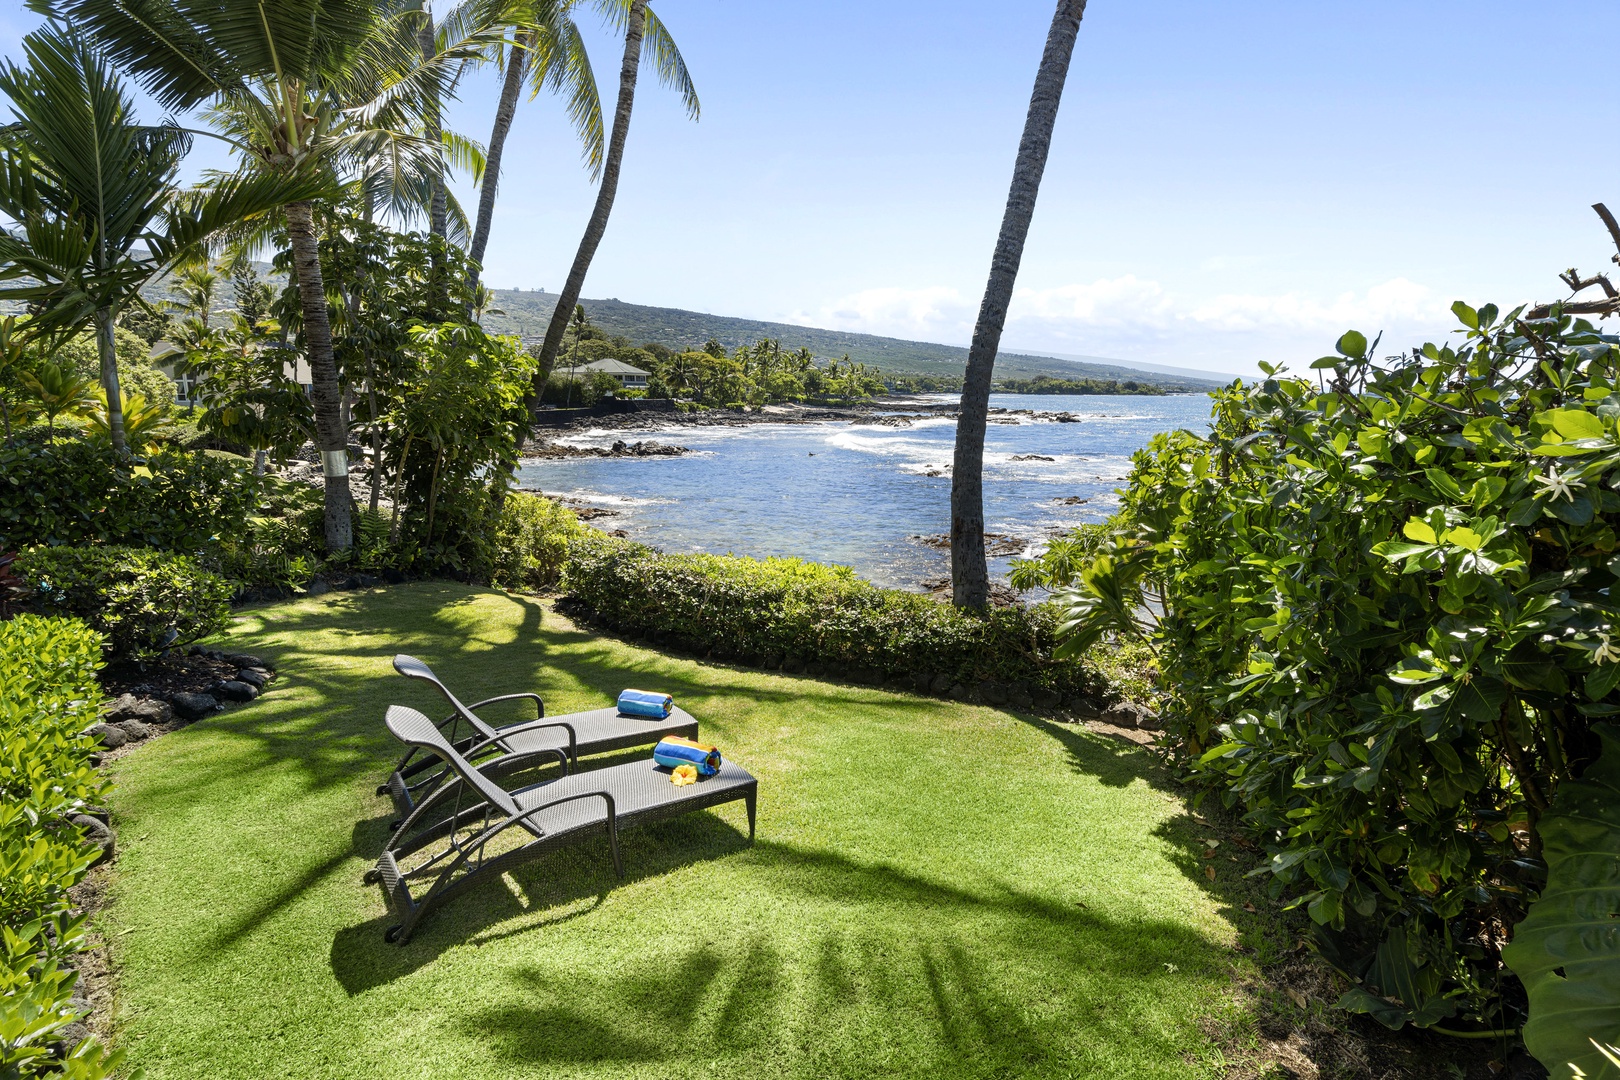 Kailua Kona Vacation Rentals, Ali'i Point #7 - Lounge time!